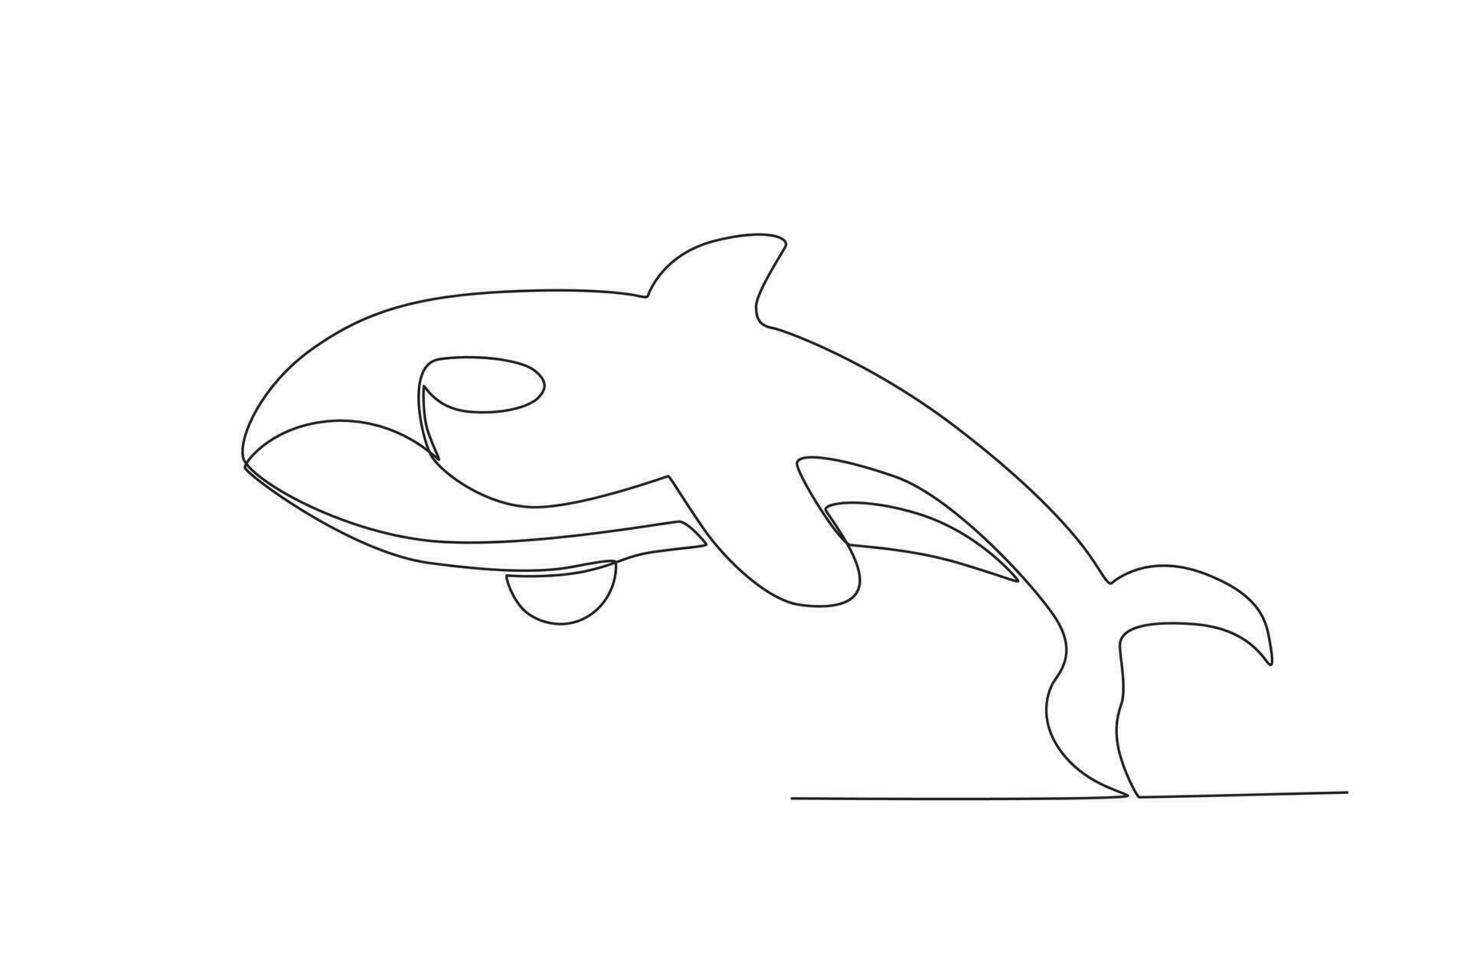 Single einer Linie Zeichnung von ein erce Wal. kontinuierlich Linie zeichnen Design Grafik Vektor Illustration.